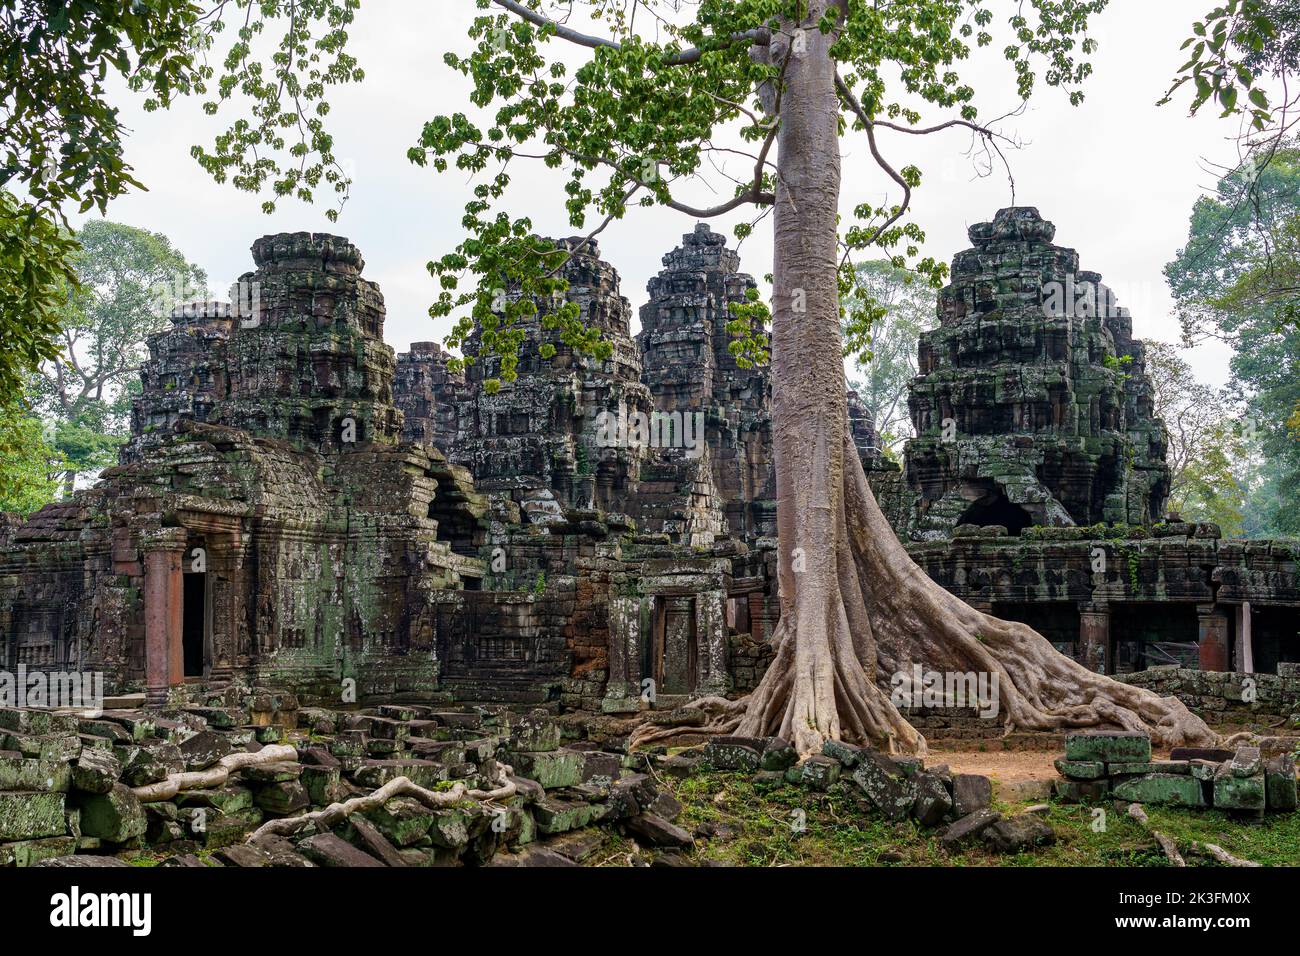 Cambodge. Province de Siem Reap. Le parc archéologique d'Angkor. Les anciennes ruines du temple Banteay Kdei avec un banyan Tree Banque D'Images